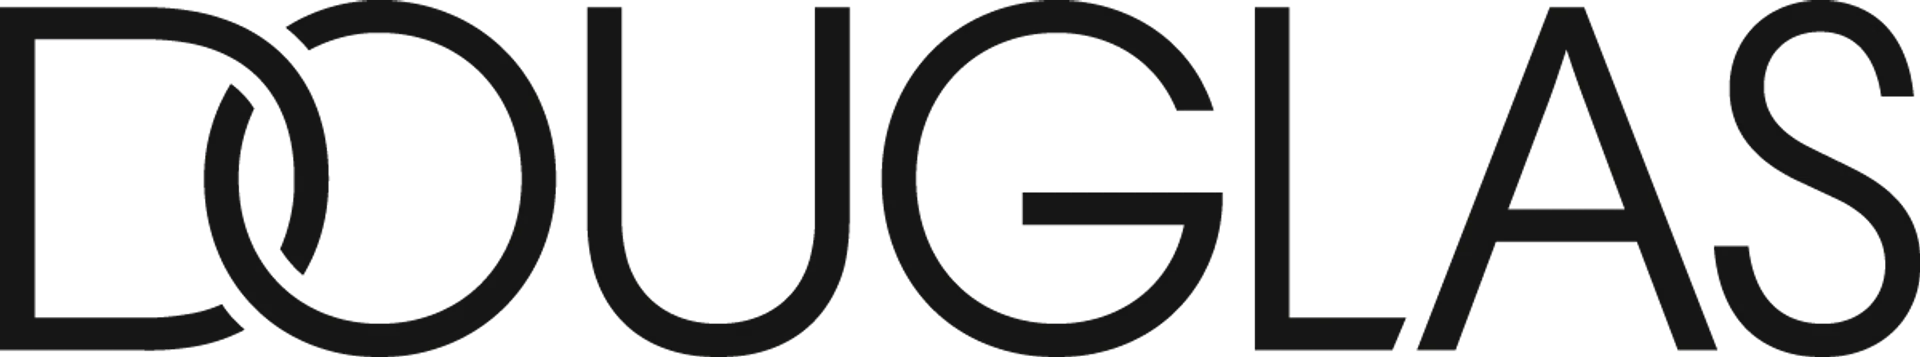 DOUGLAS logo